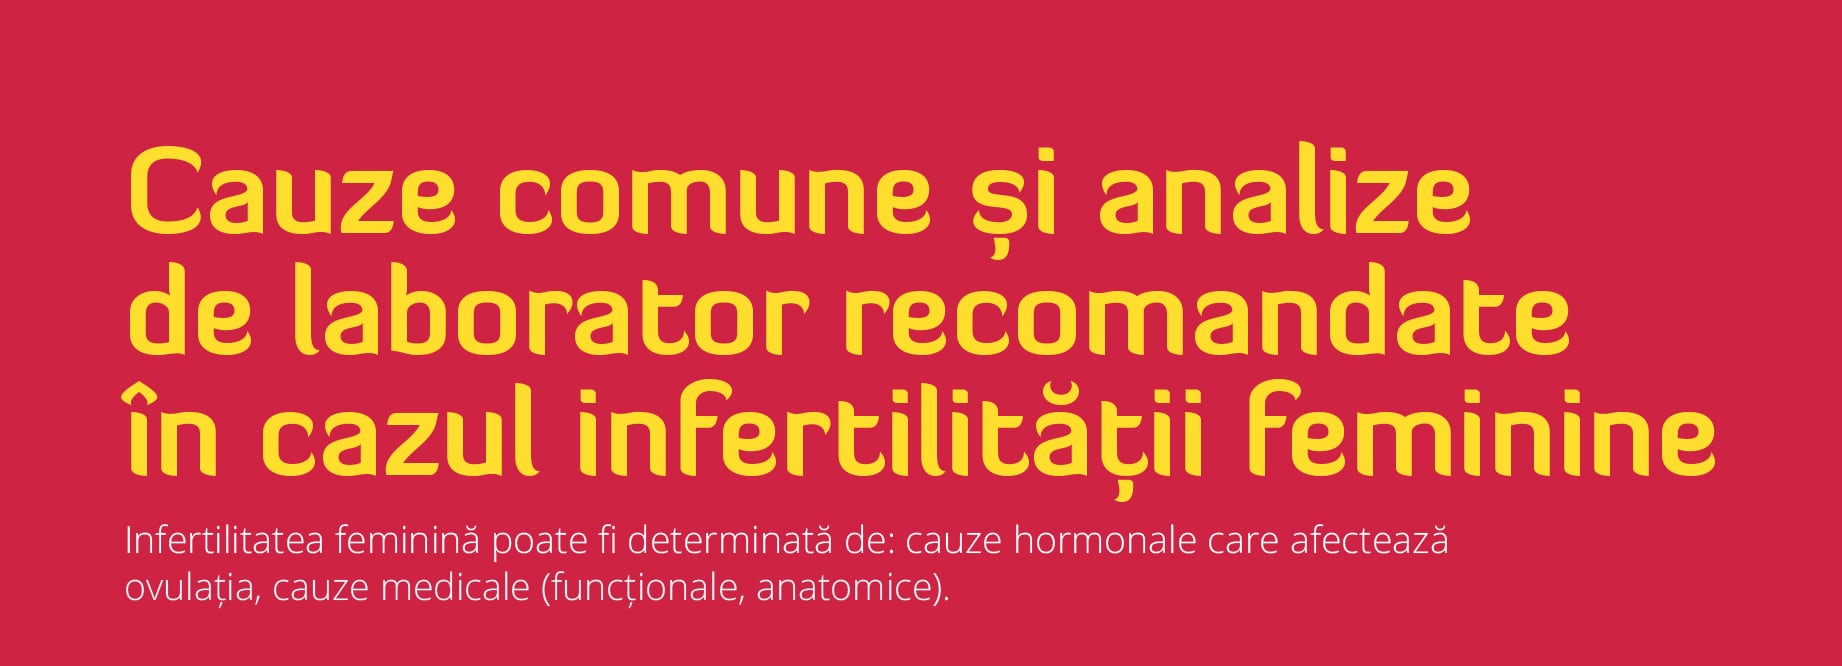 elect Immunity gray Infertilitatea feminină. Analize de laborator recomandate